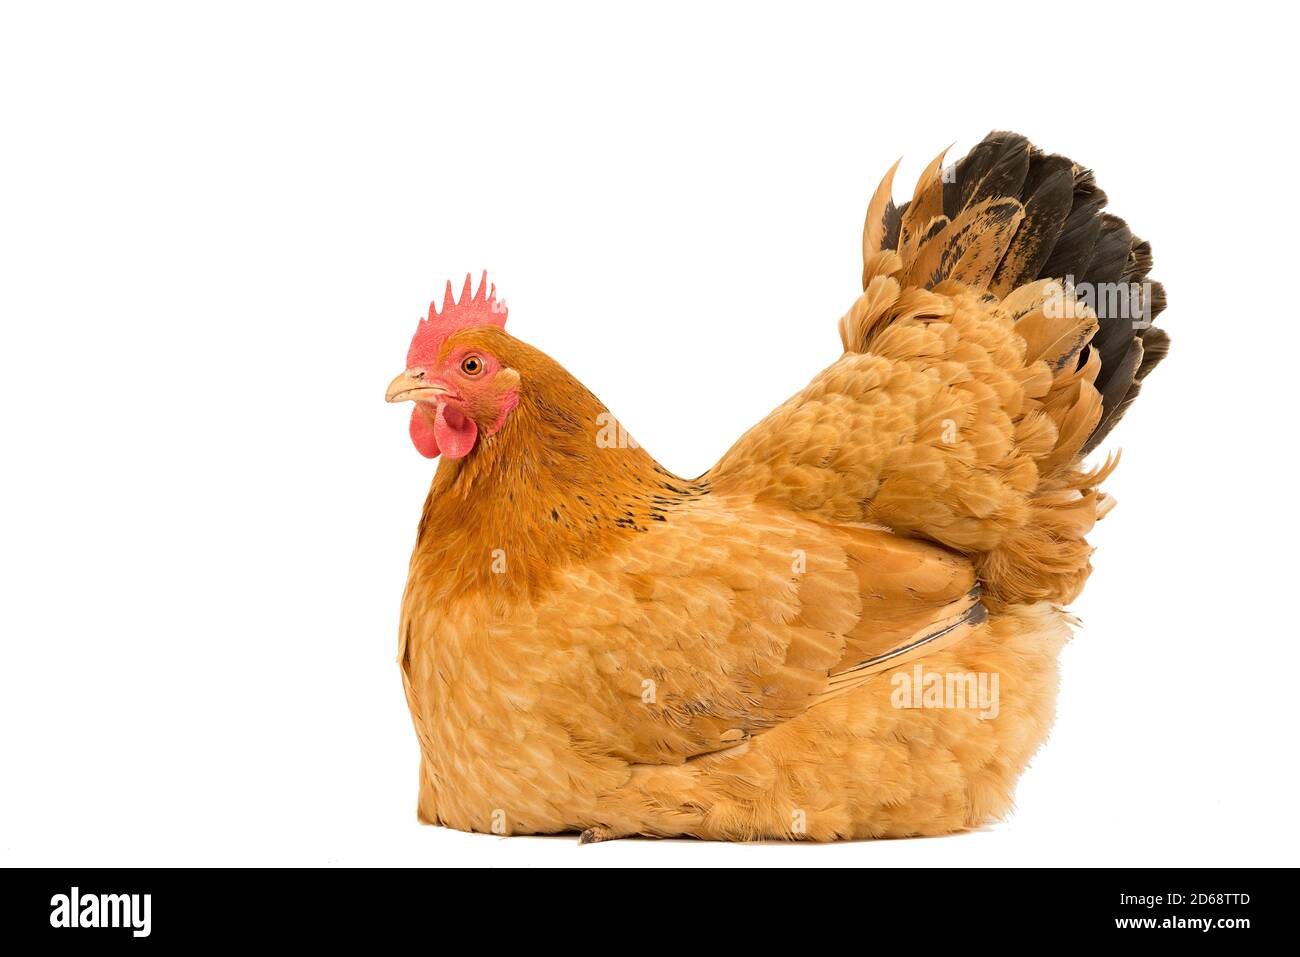 Un portrait d'un poulet de poule rouge du New Hampshire assis duvet de reproduction, tout le corps isolé sur un fond blanc Banque D'Images